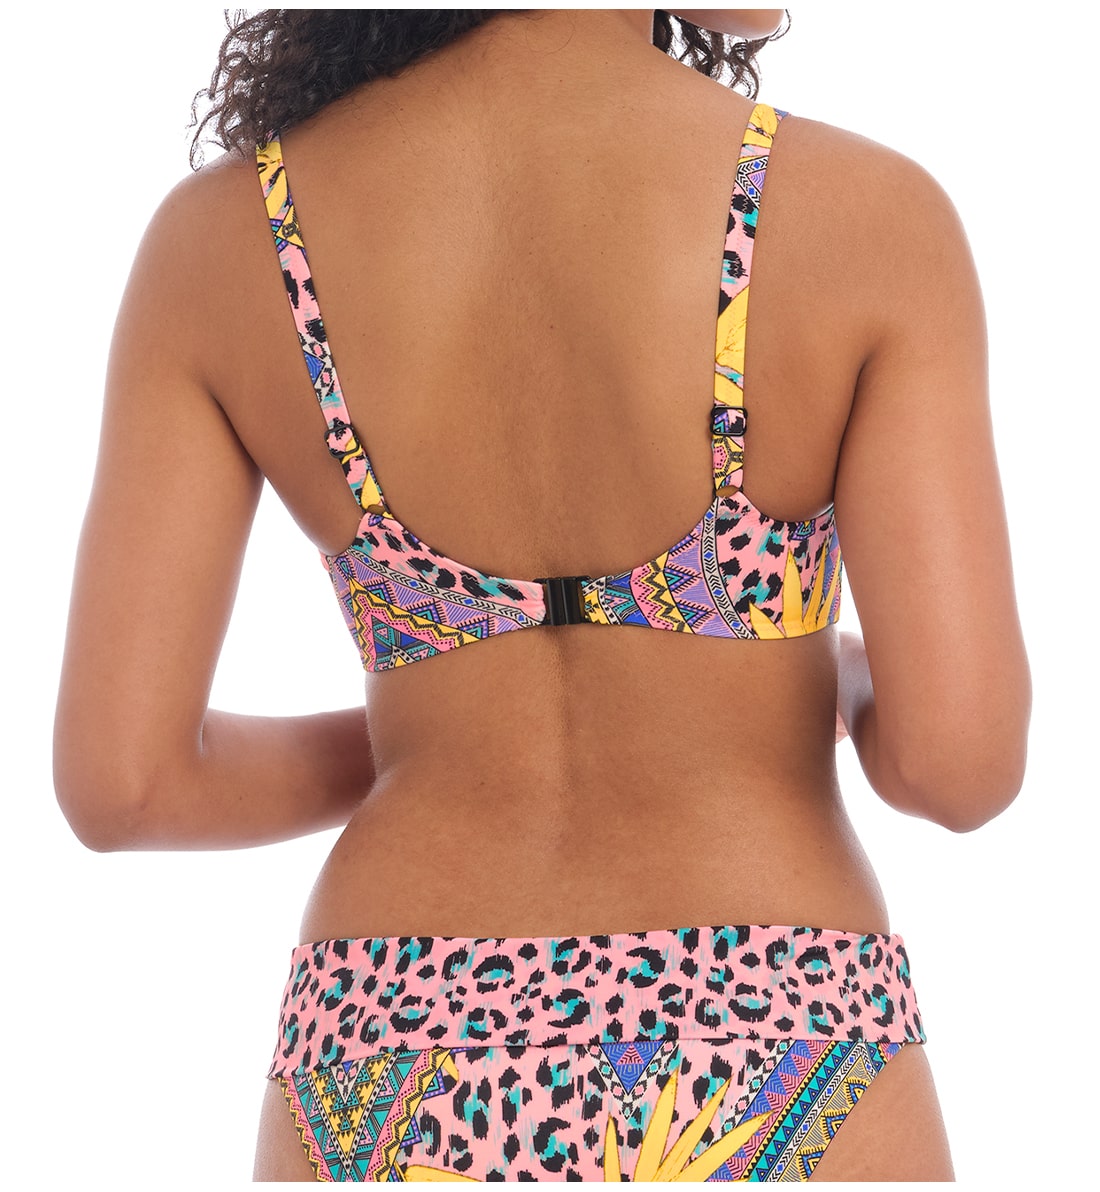 Freya Cala Fiesta Sweetheart Padded Underwire Bikini Top (200903),30D,Multi - Multi,30D